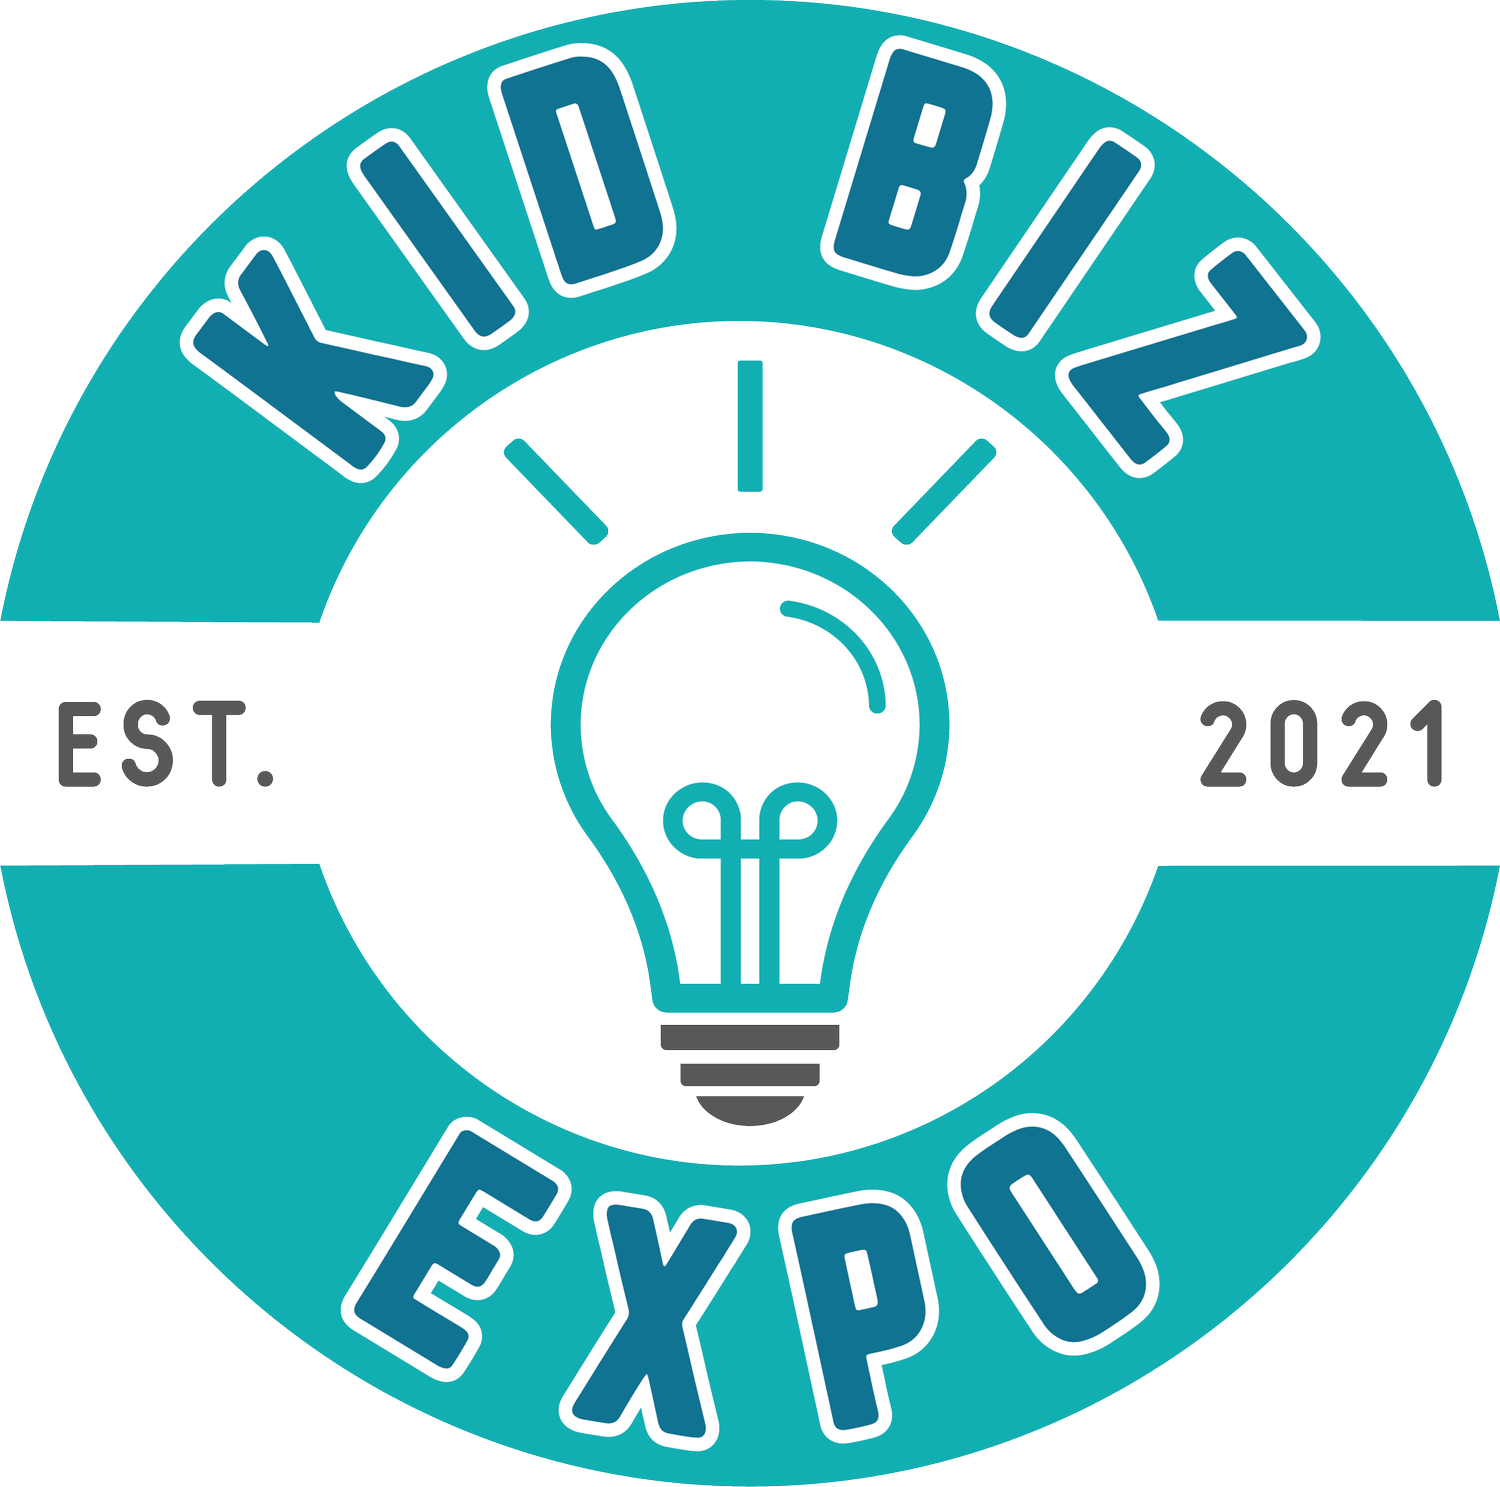 Kid Biz Expo